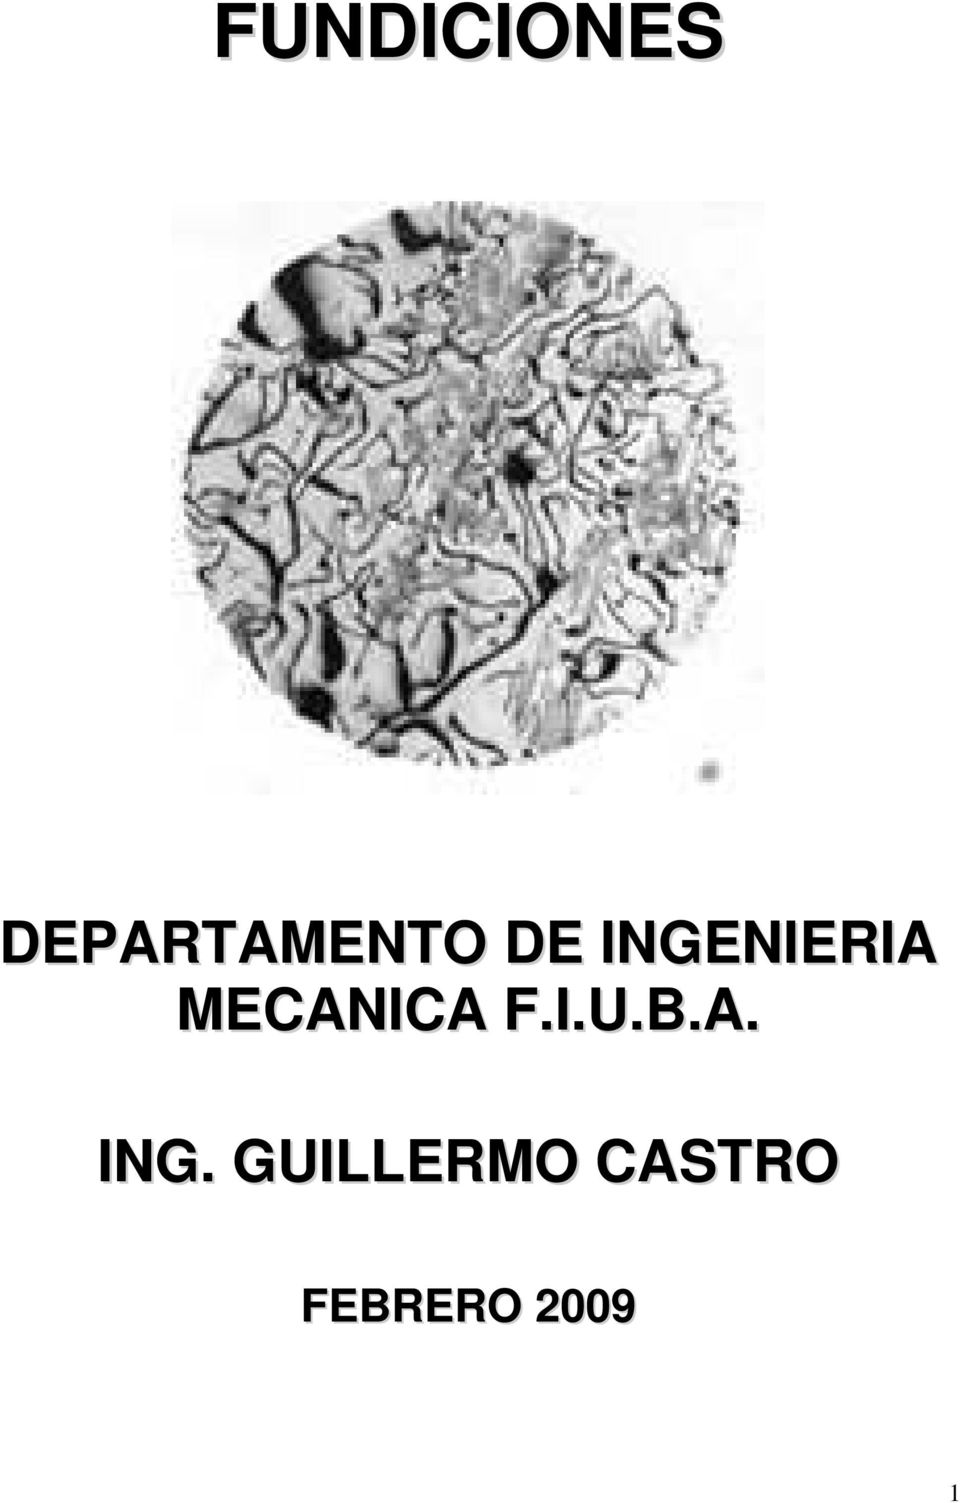 INGENIERIA MECANICA F.I.U.